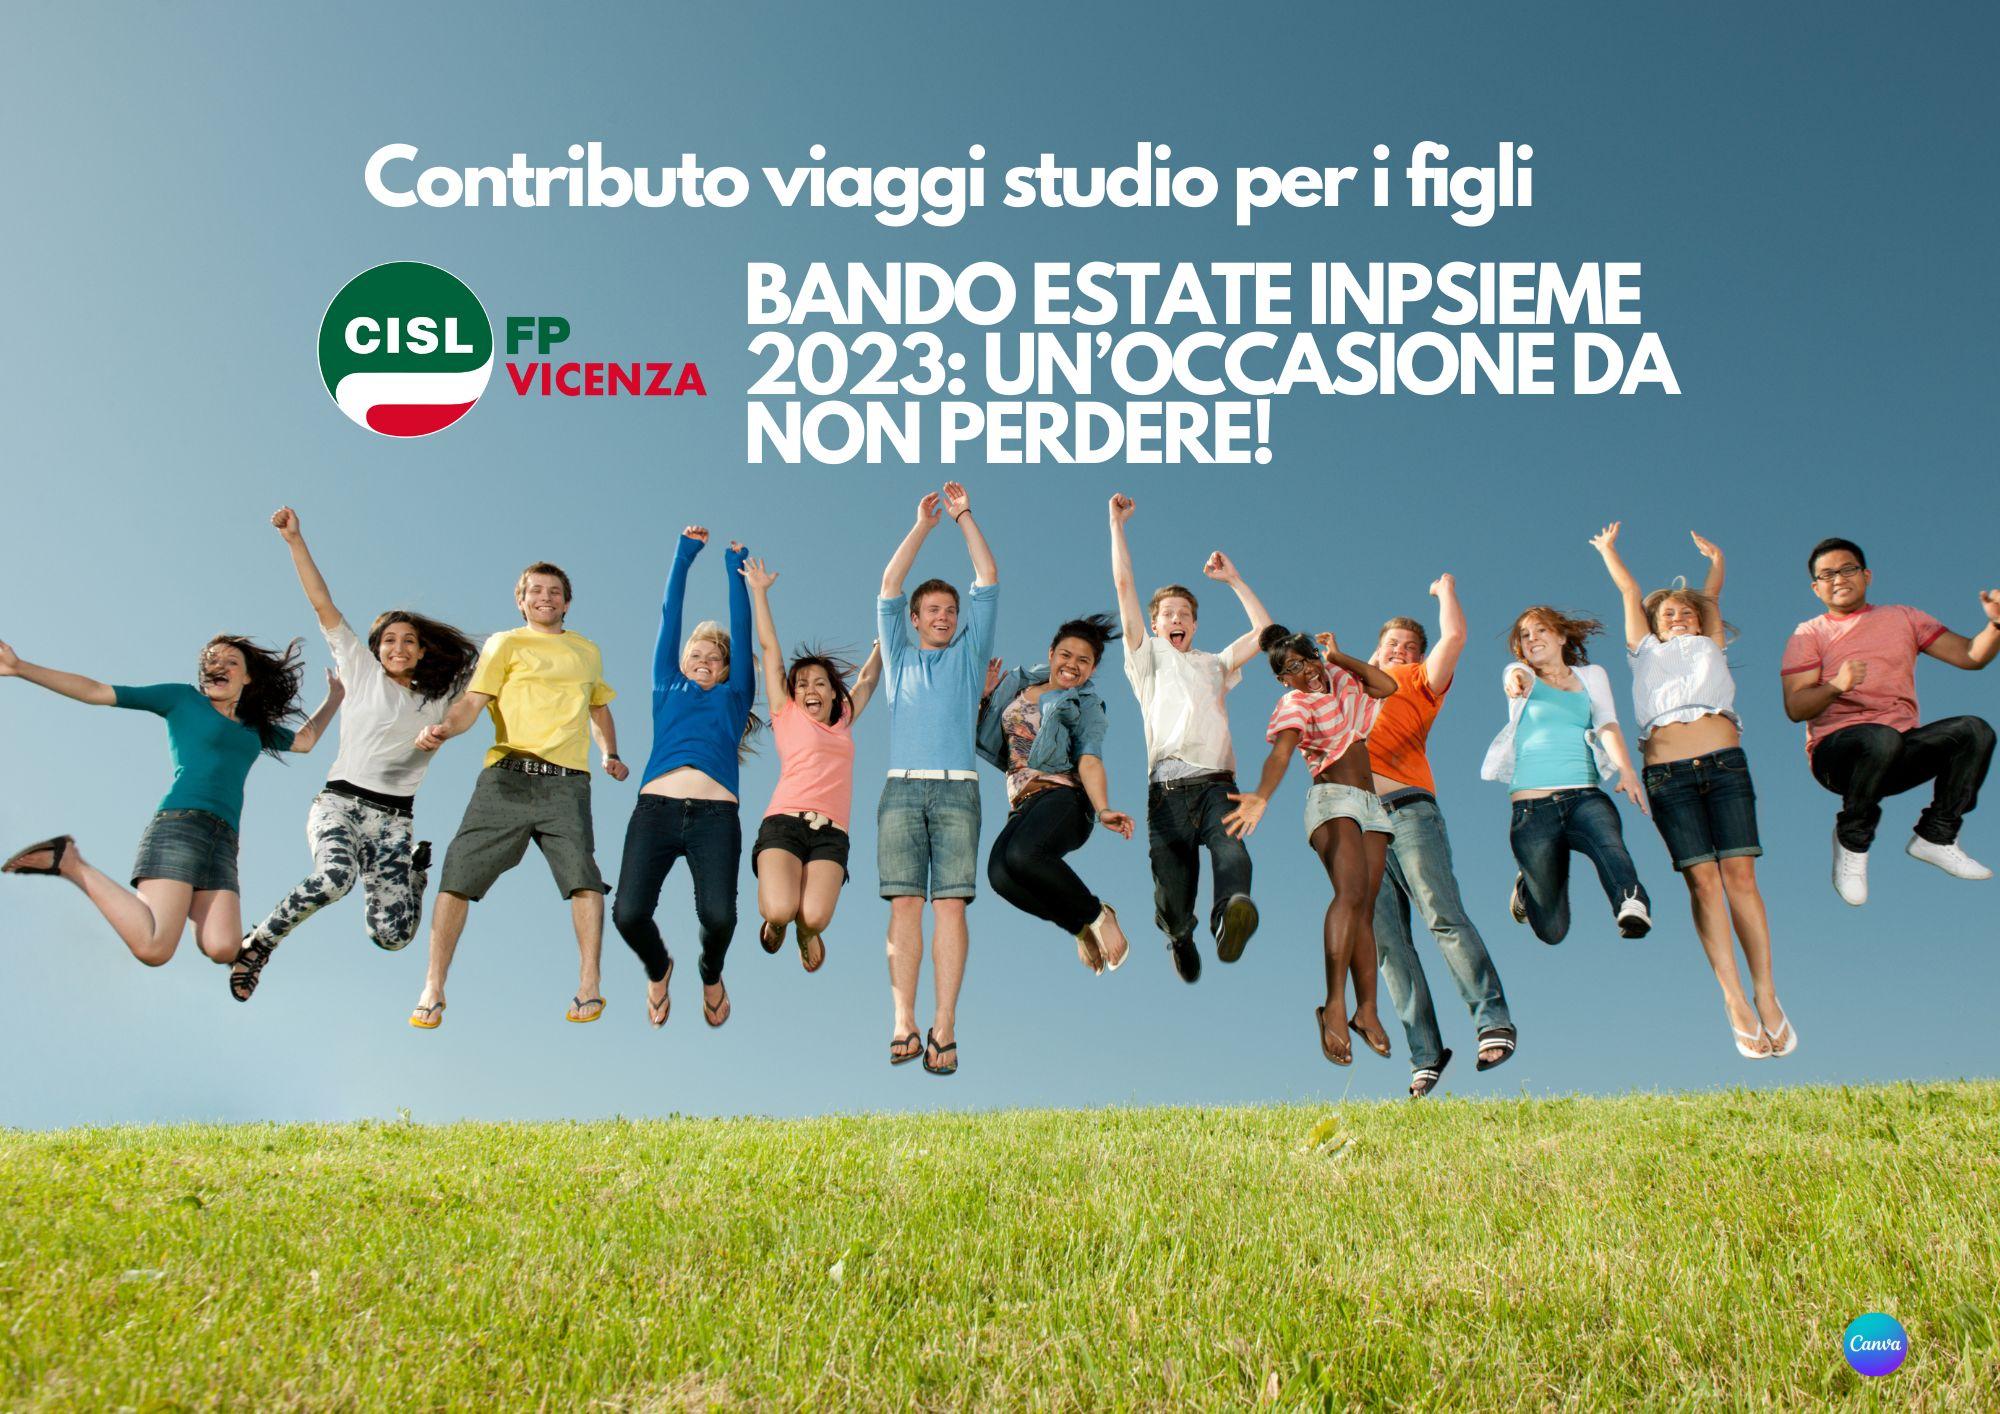 CISL FP Vicenza. Bando Estate INPSieme 2023 per le vacanze studio dei figli